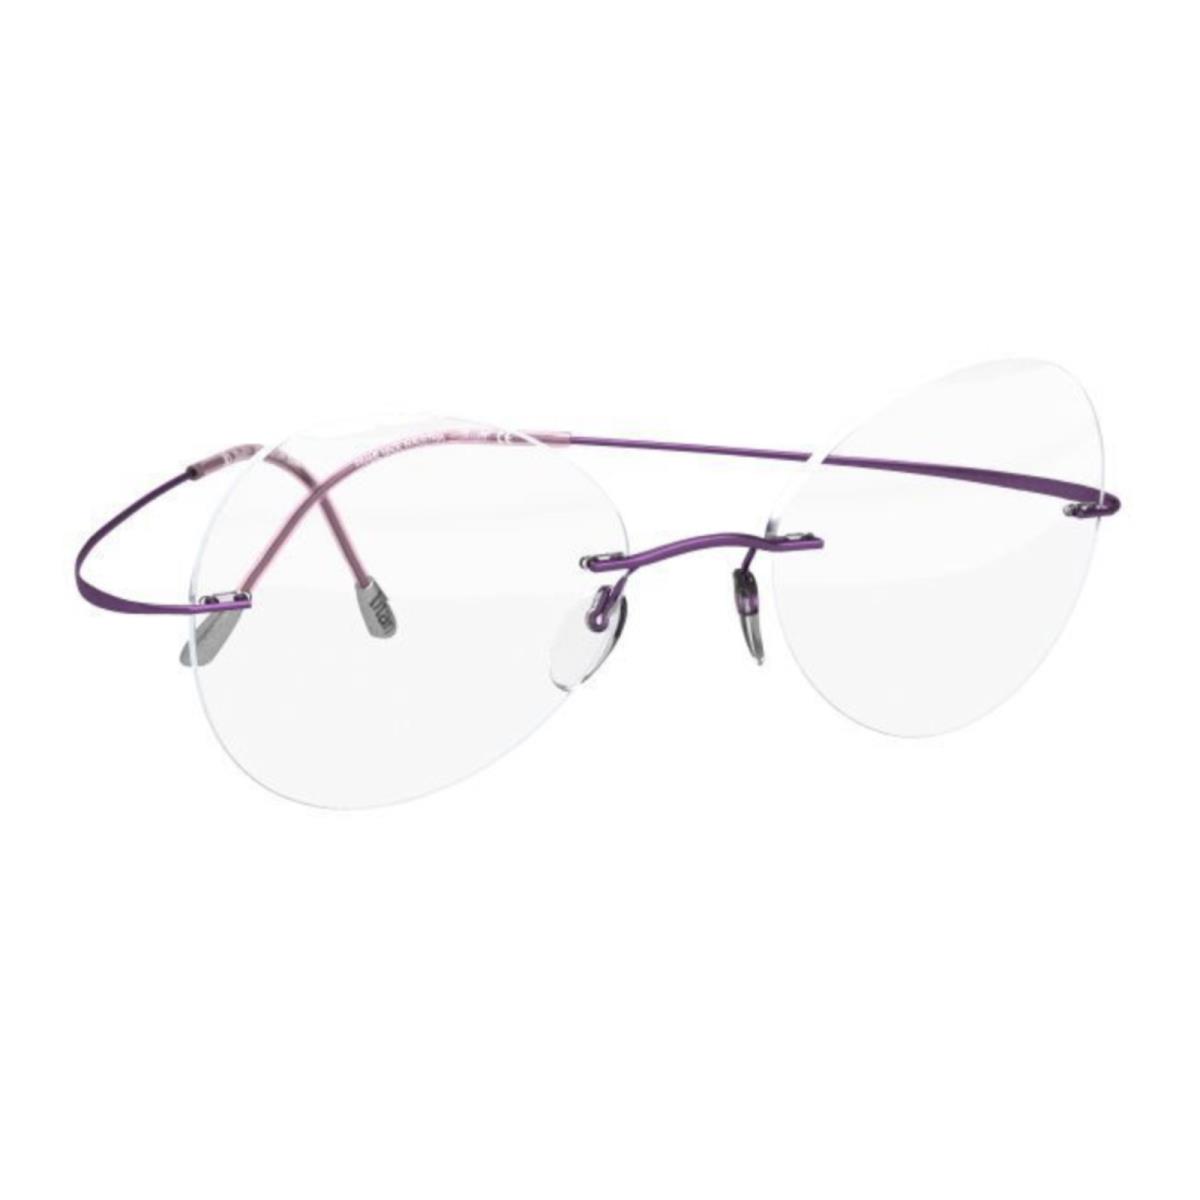 Silhouette Rimless Eyeglasses Titan Minimal Art Must 5515 CS 3540 Purple Frames